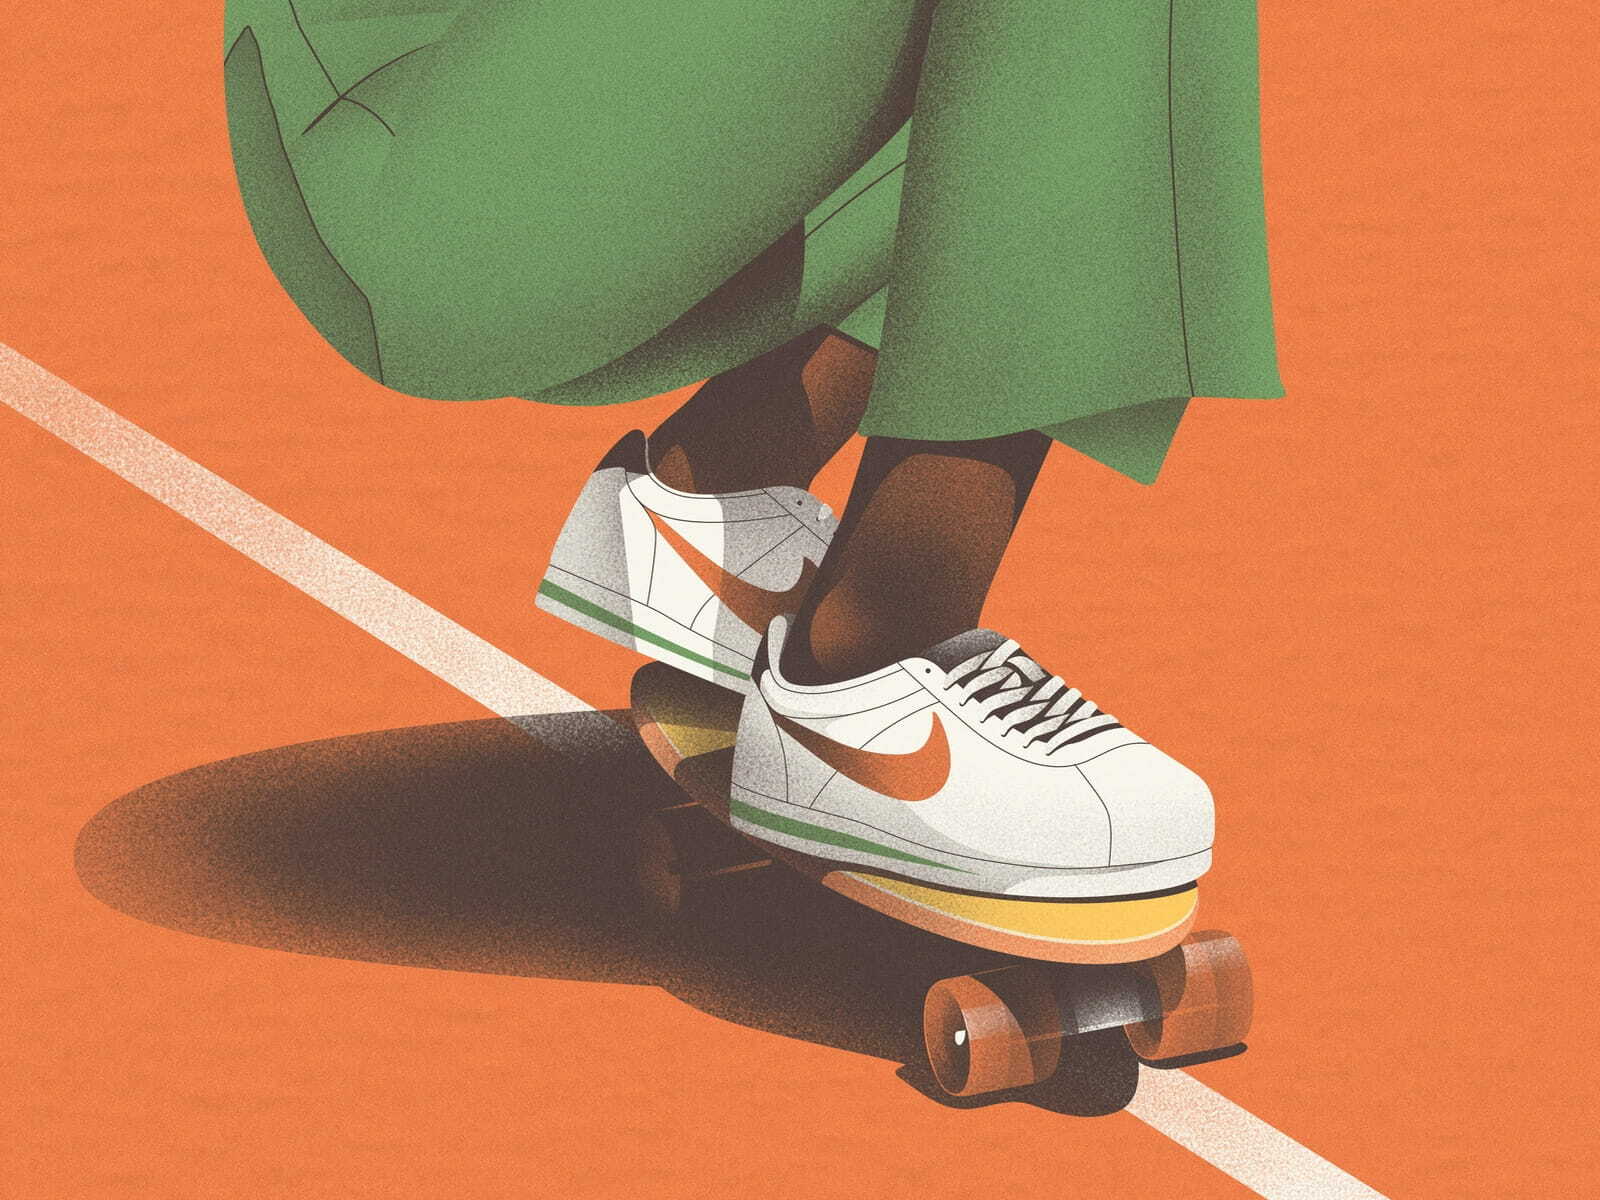 Skate I